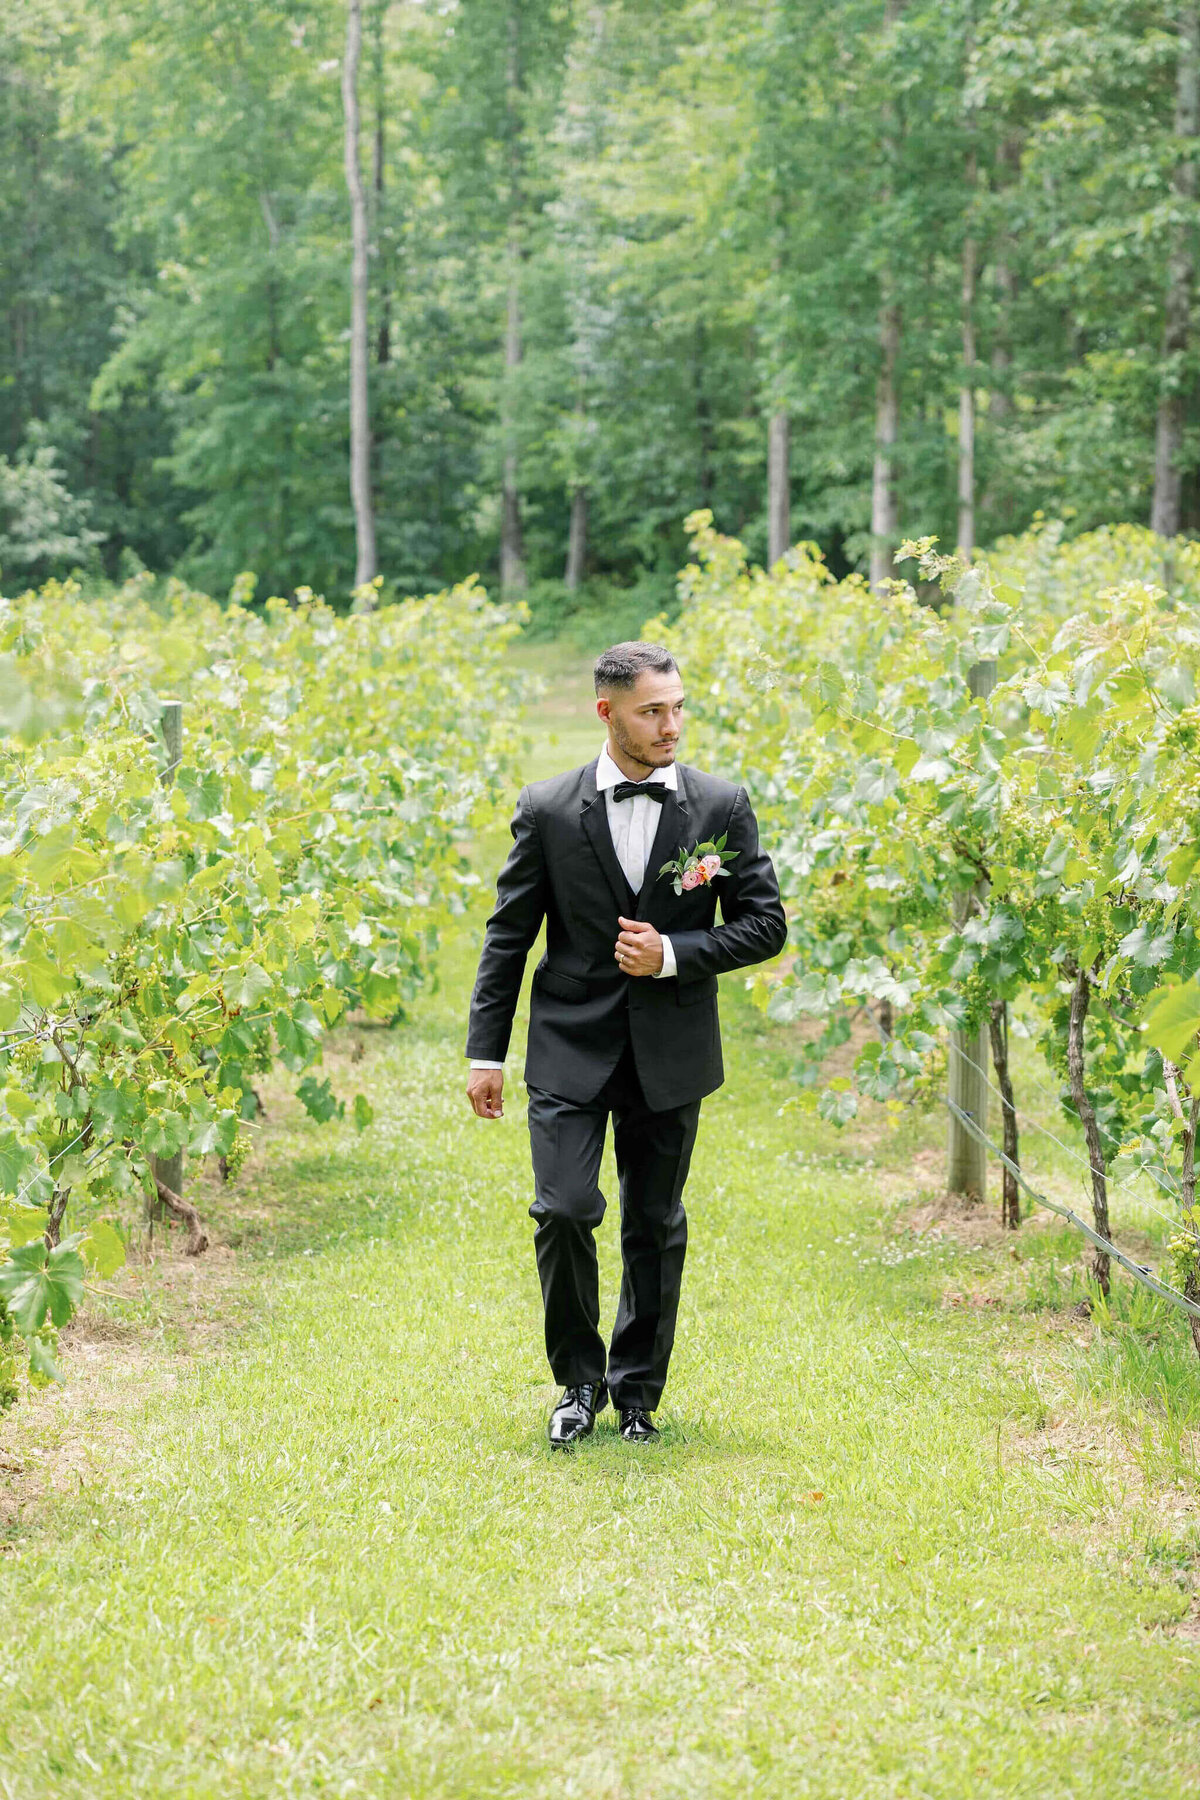 Groom walking through the vineyards